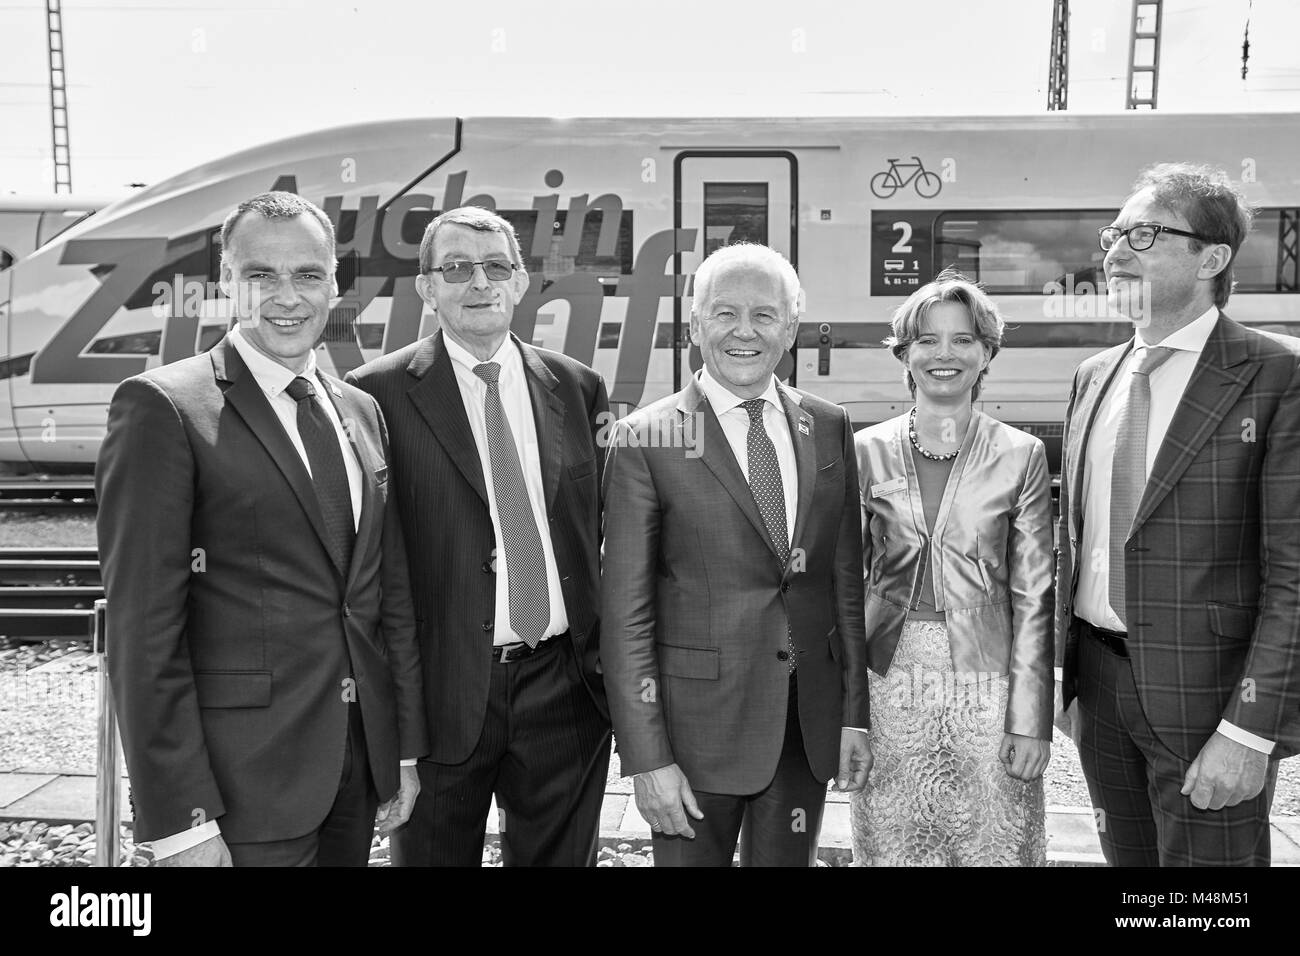 Deutsche Bahn: ritratto di gruppo occasione venticinque anni di ghiaccio in Germania Foto Stock